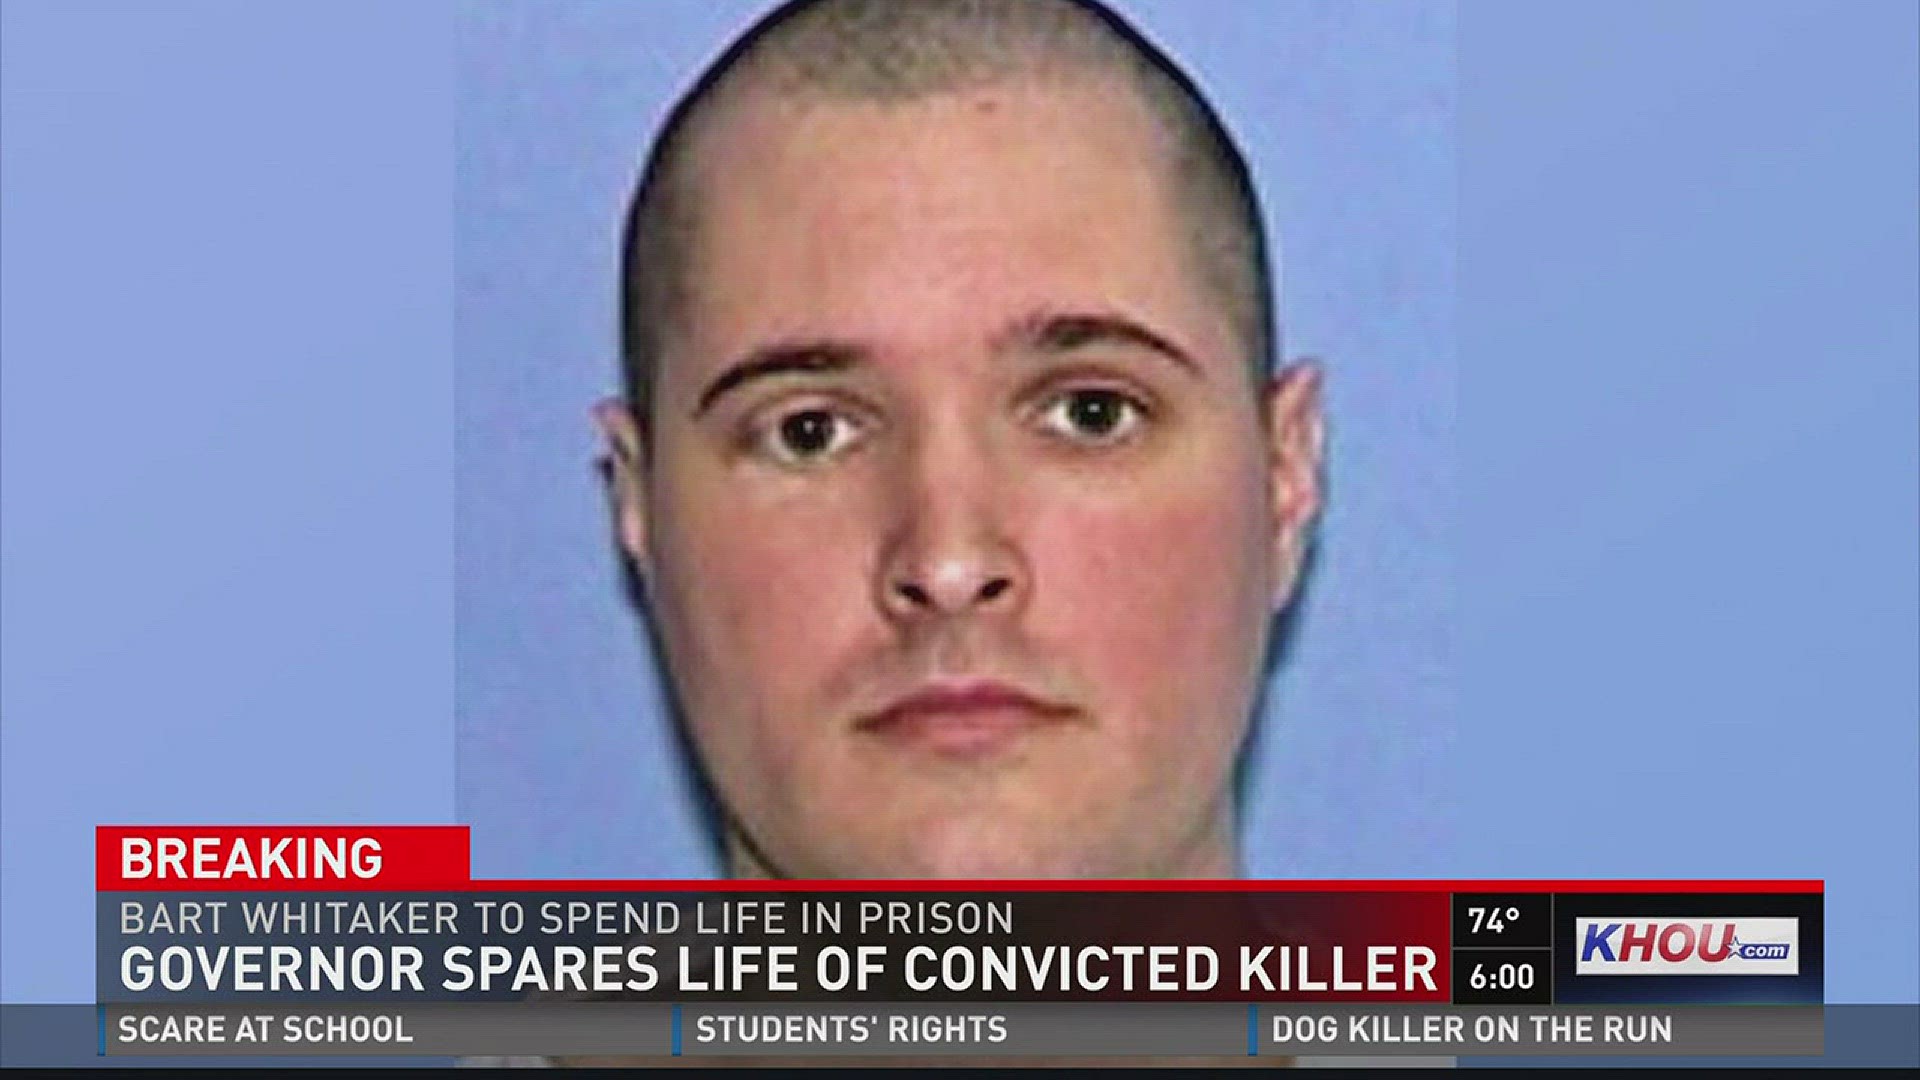 Gov. Greg Abbott commuted the death sentence of Bart Whitaker late Thursday.